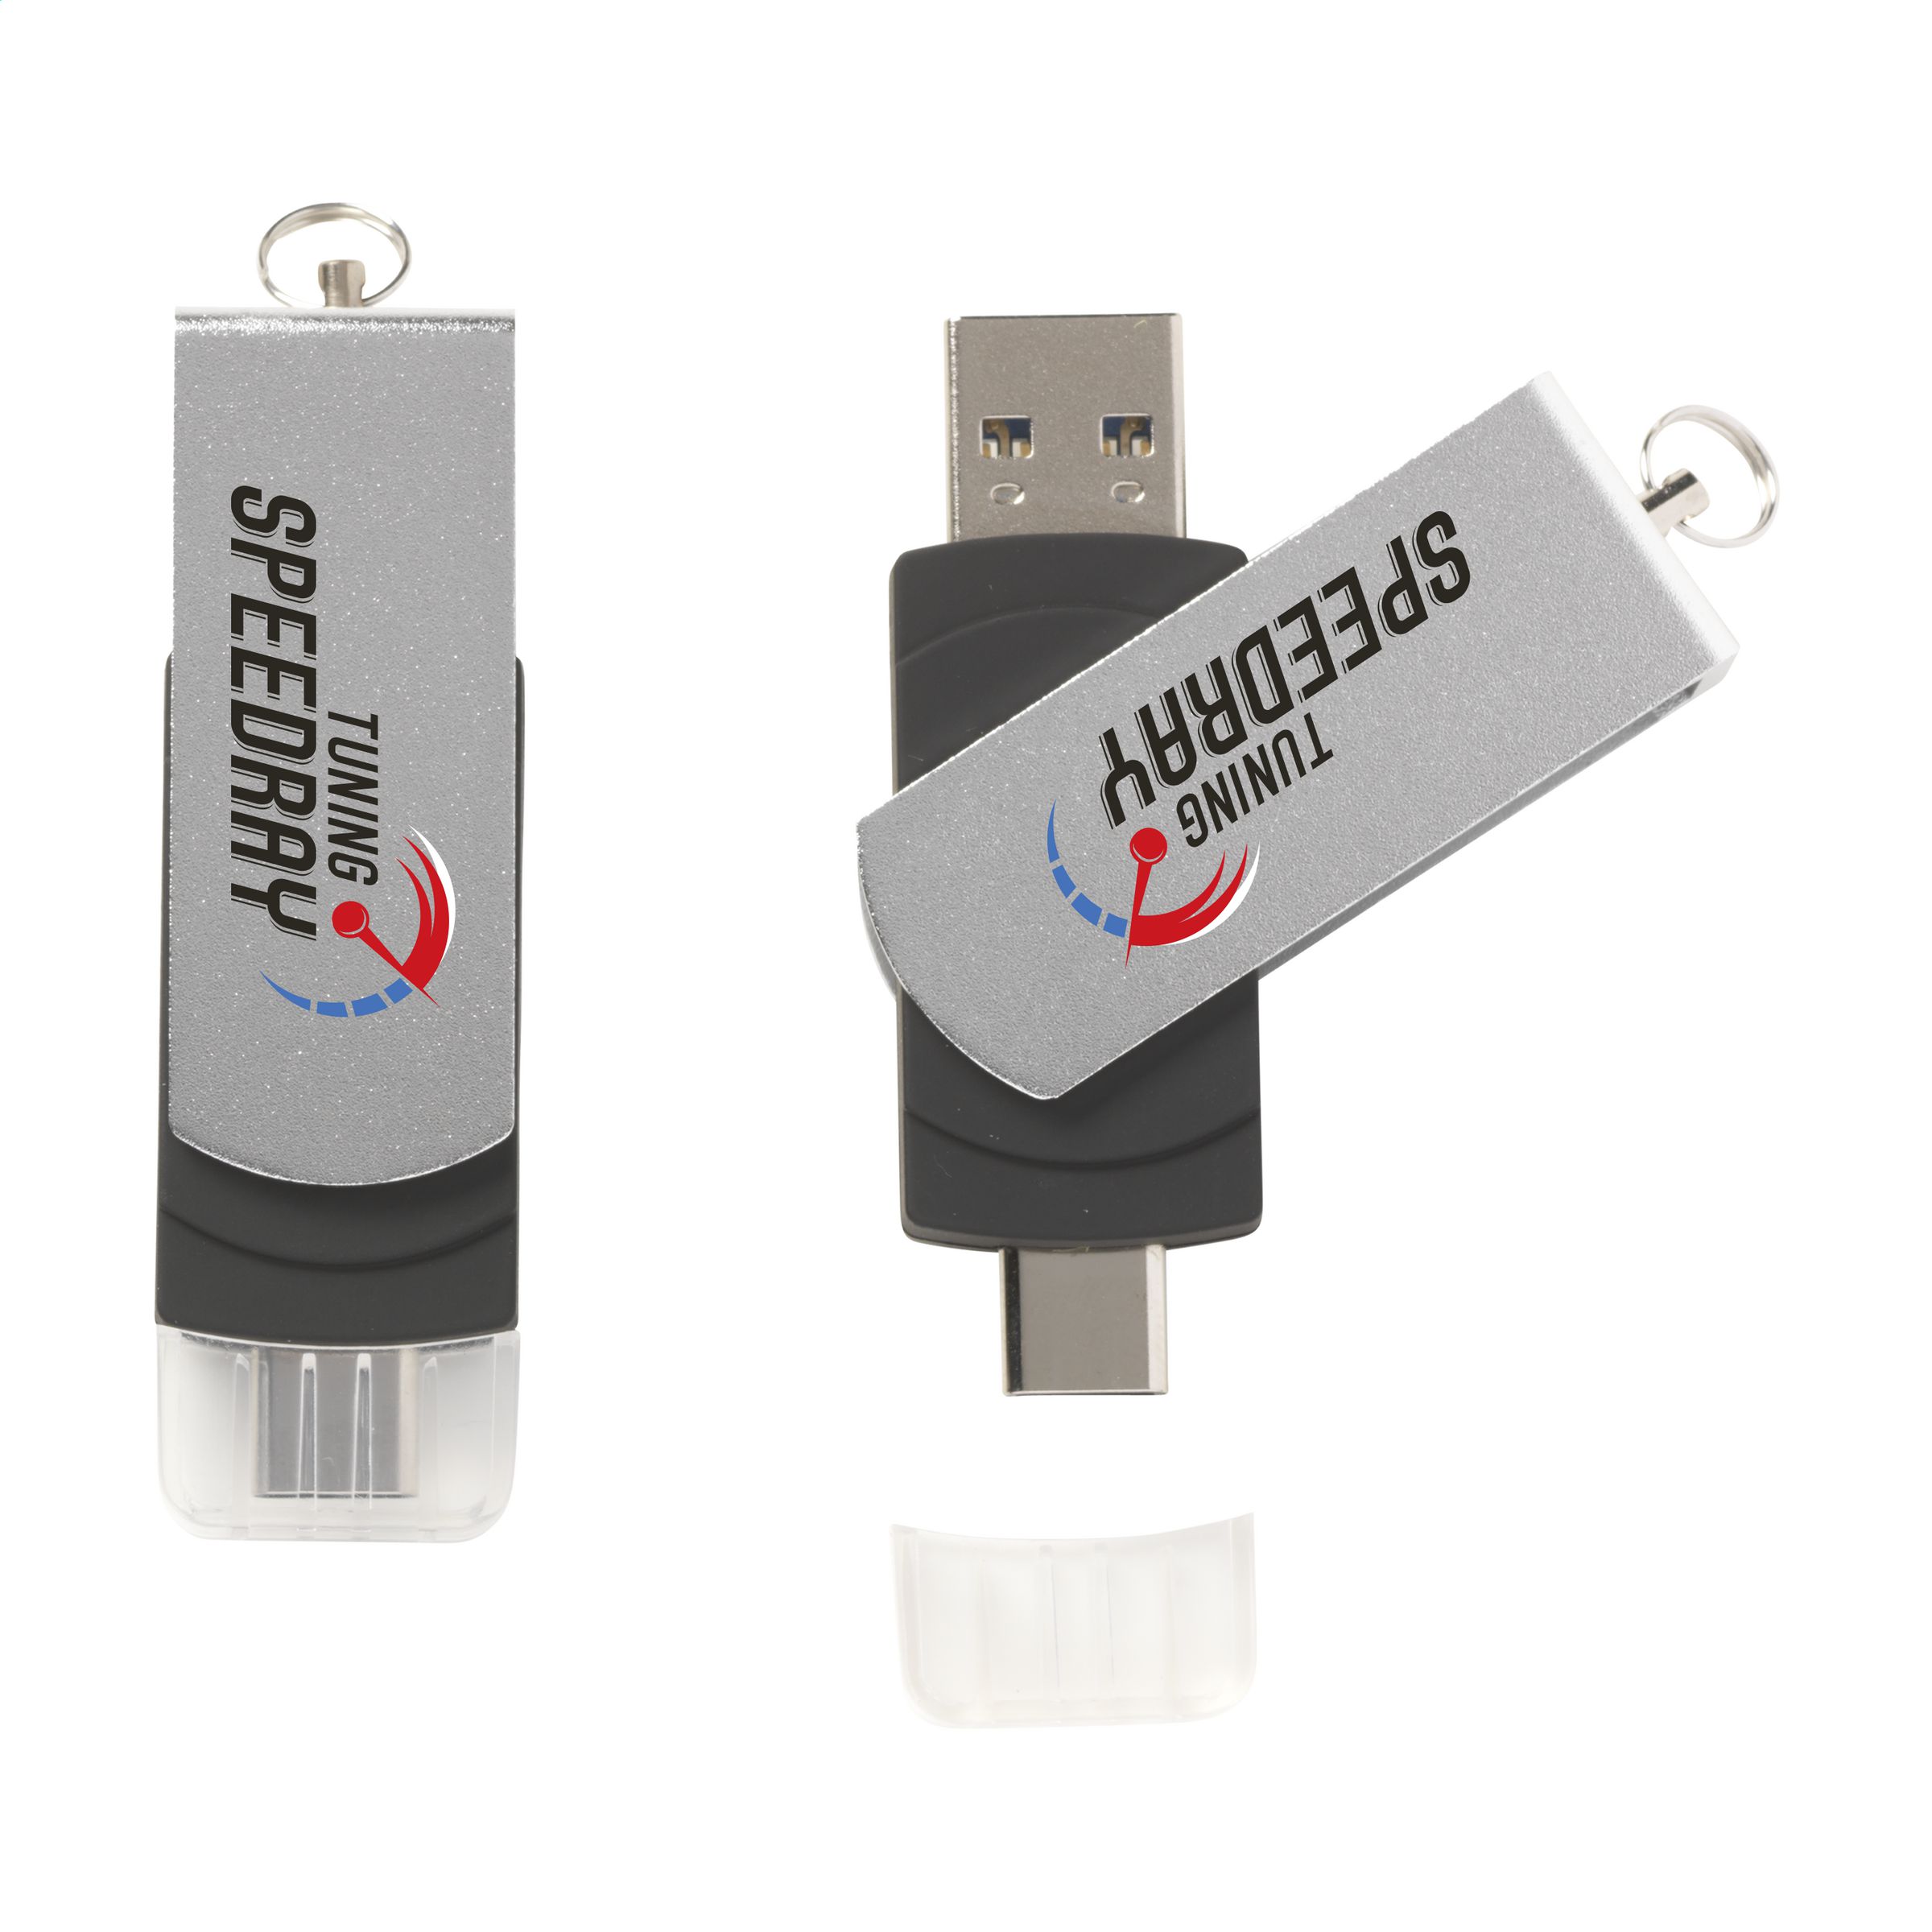 Chiavetta USB a doppio connettore - Tramonti